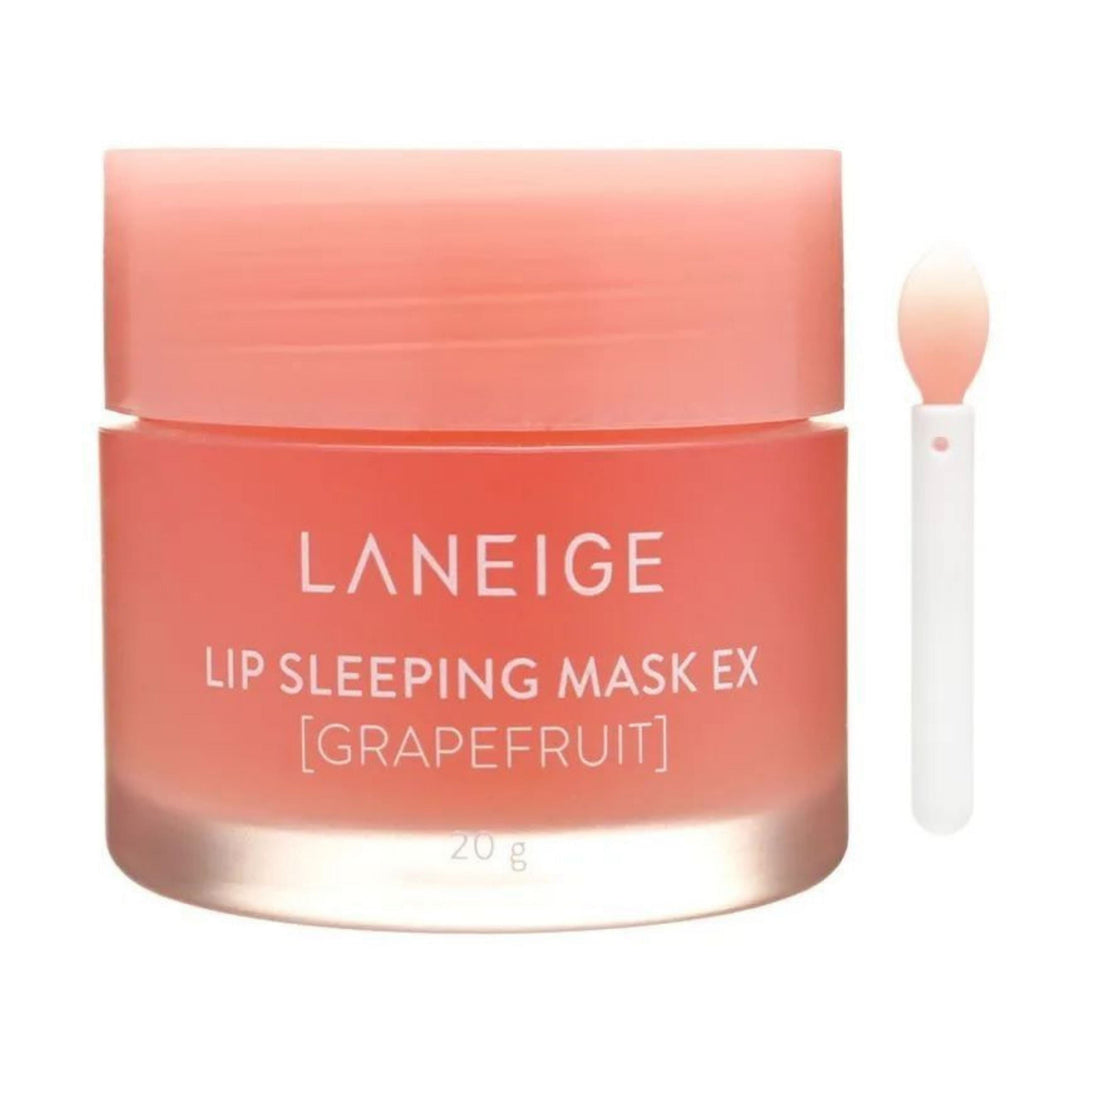 LANEIGE Lip Sleeping Mask EX Grapefruit 20g Skin Care LANEIGE ORION XO Sri Lanka